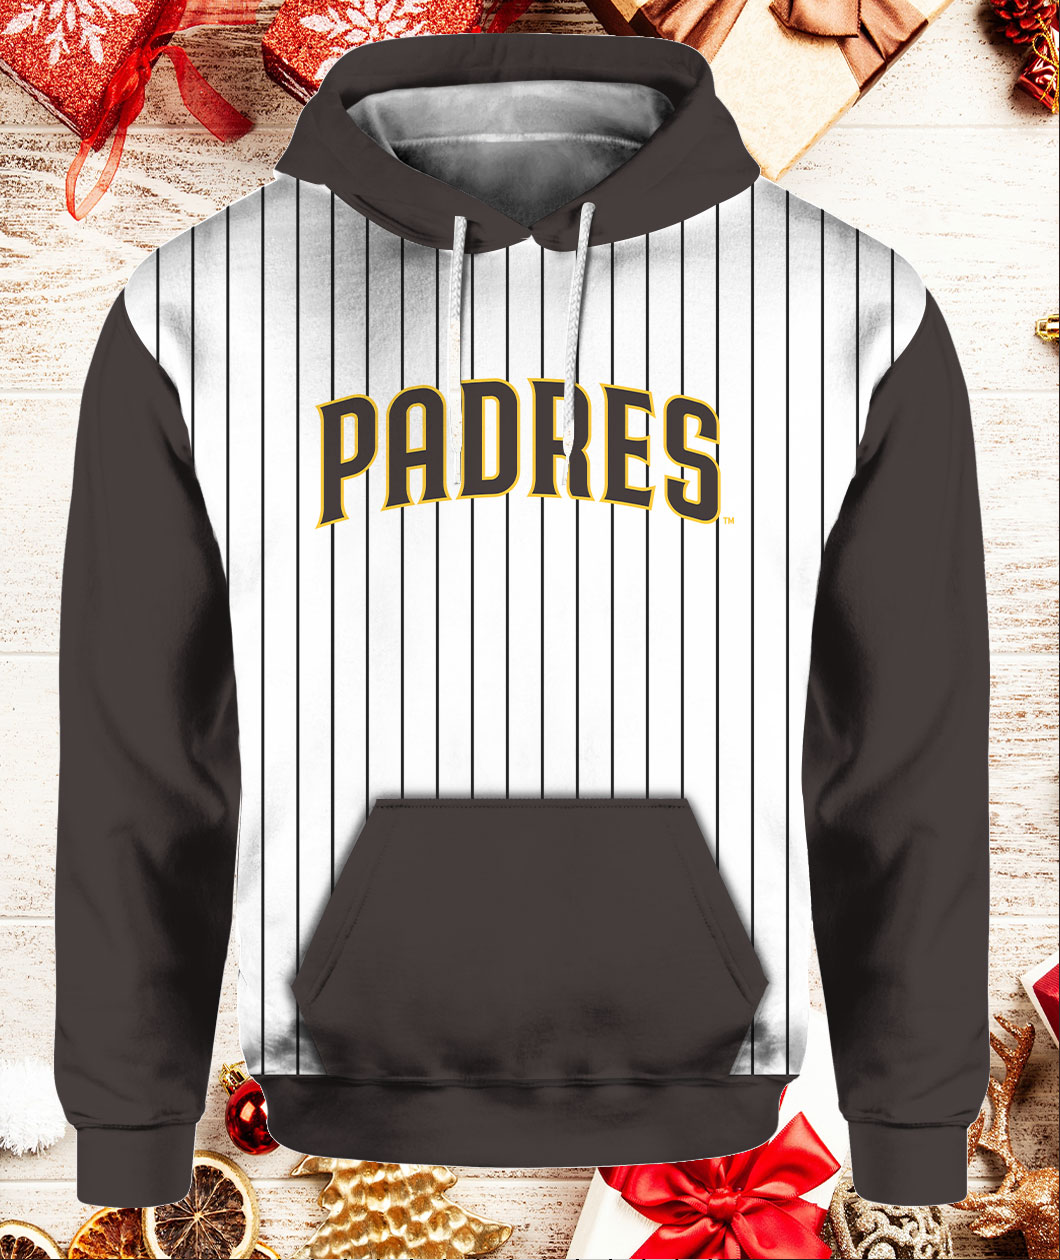 Giveaways  San Diego Padres